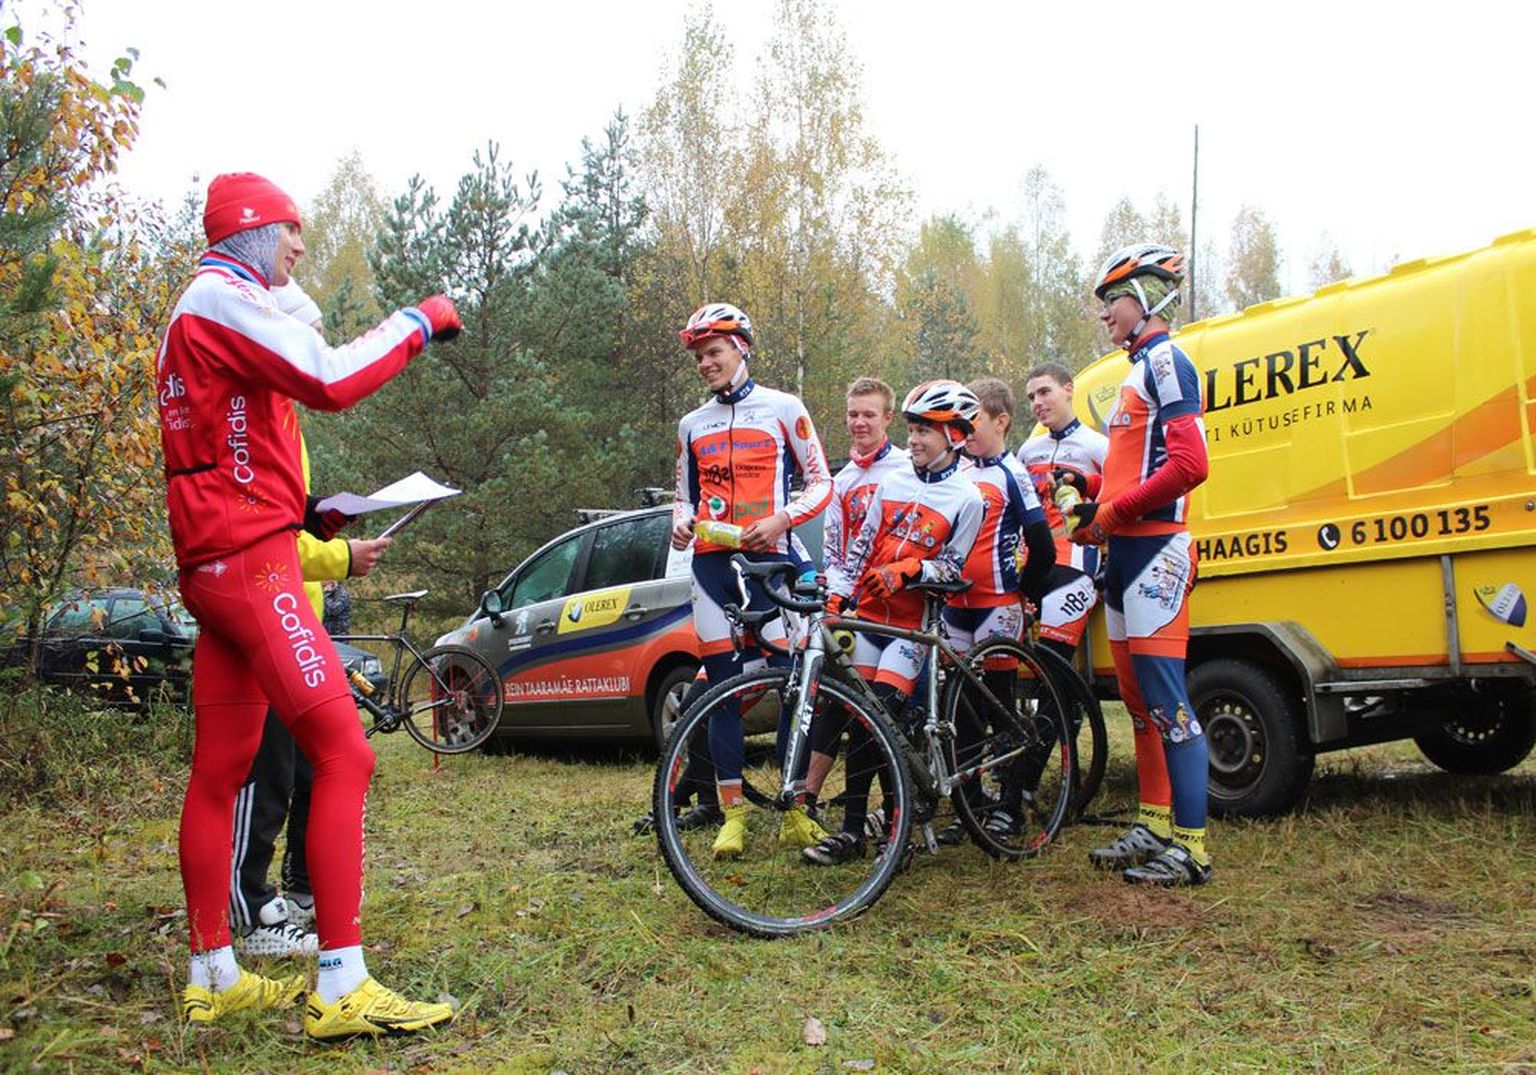 Rattasõit on meeskonnaala: Rein Taaramäe jagab omanimelise klubi noortele ratturitele enne starti viimaseid juhiseid.